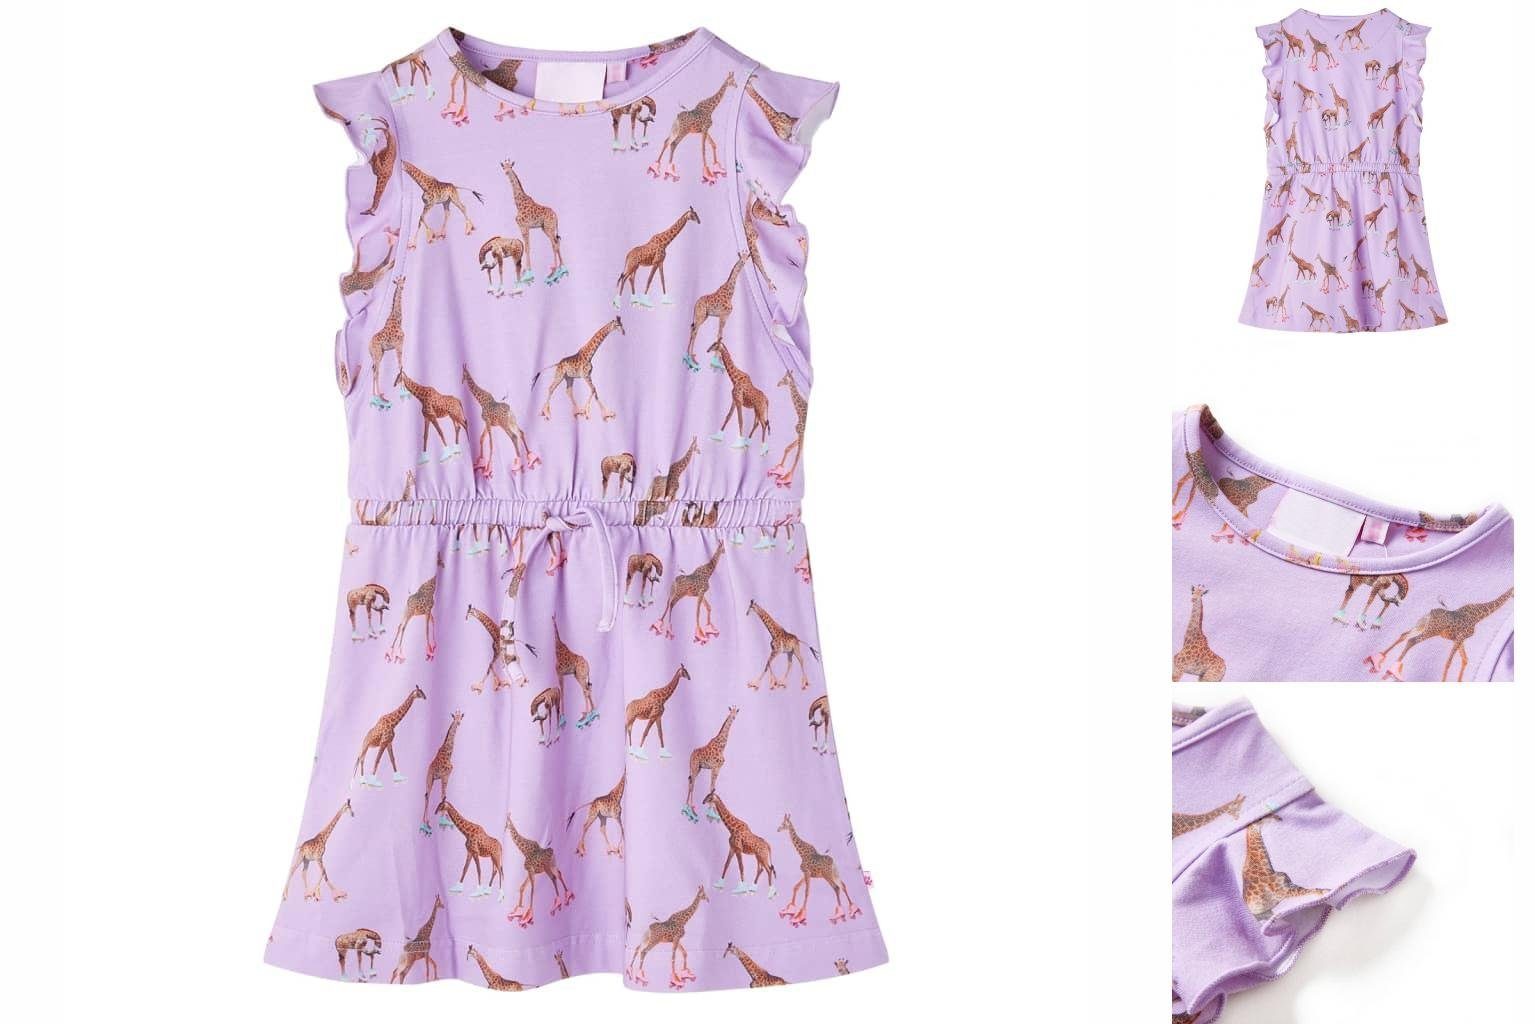 Rüschenärmeln mit Kinderkleid Lila 128 Giraffen-Motiv A-Linien-Kleid und vidaXL Taillenband